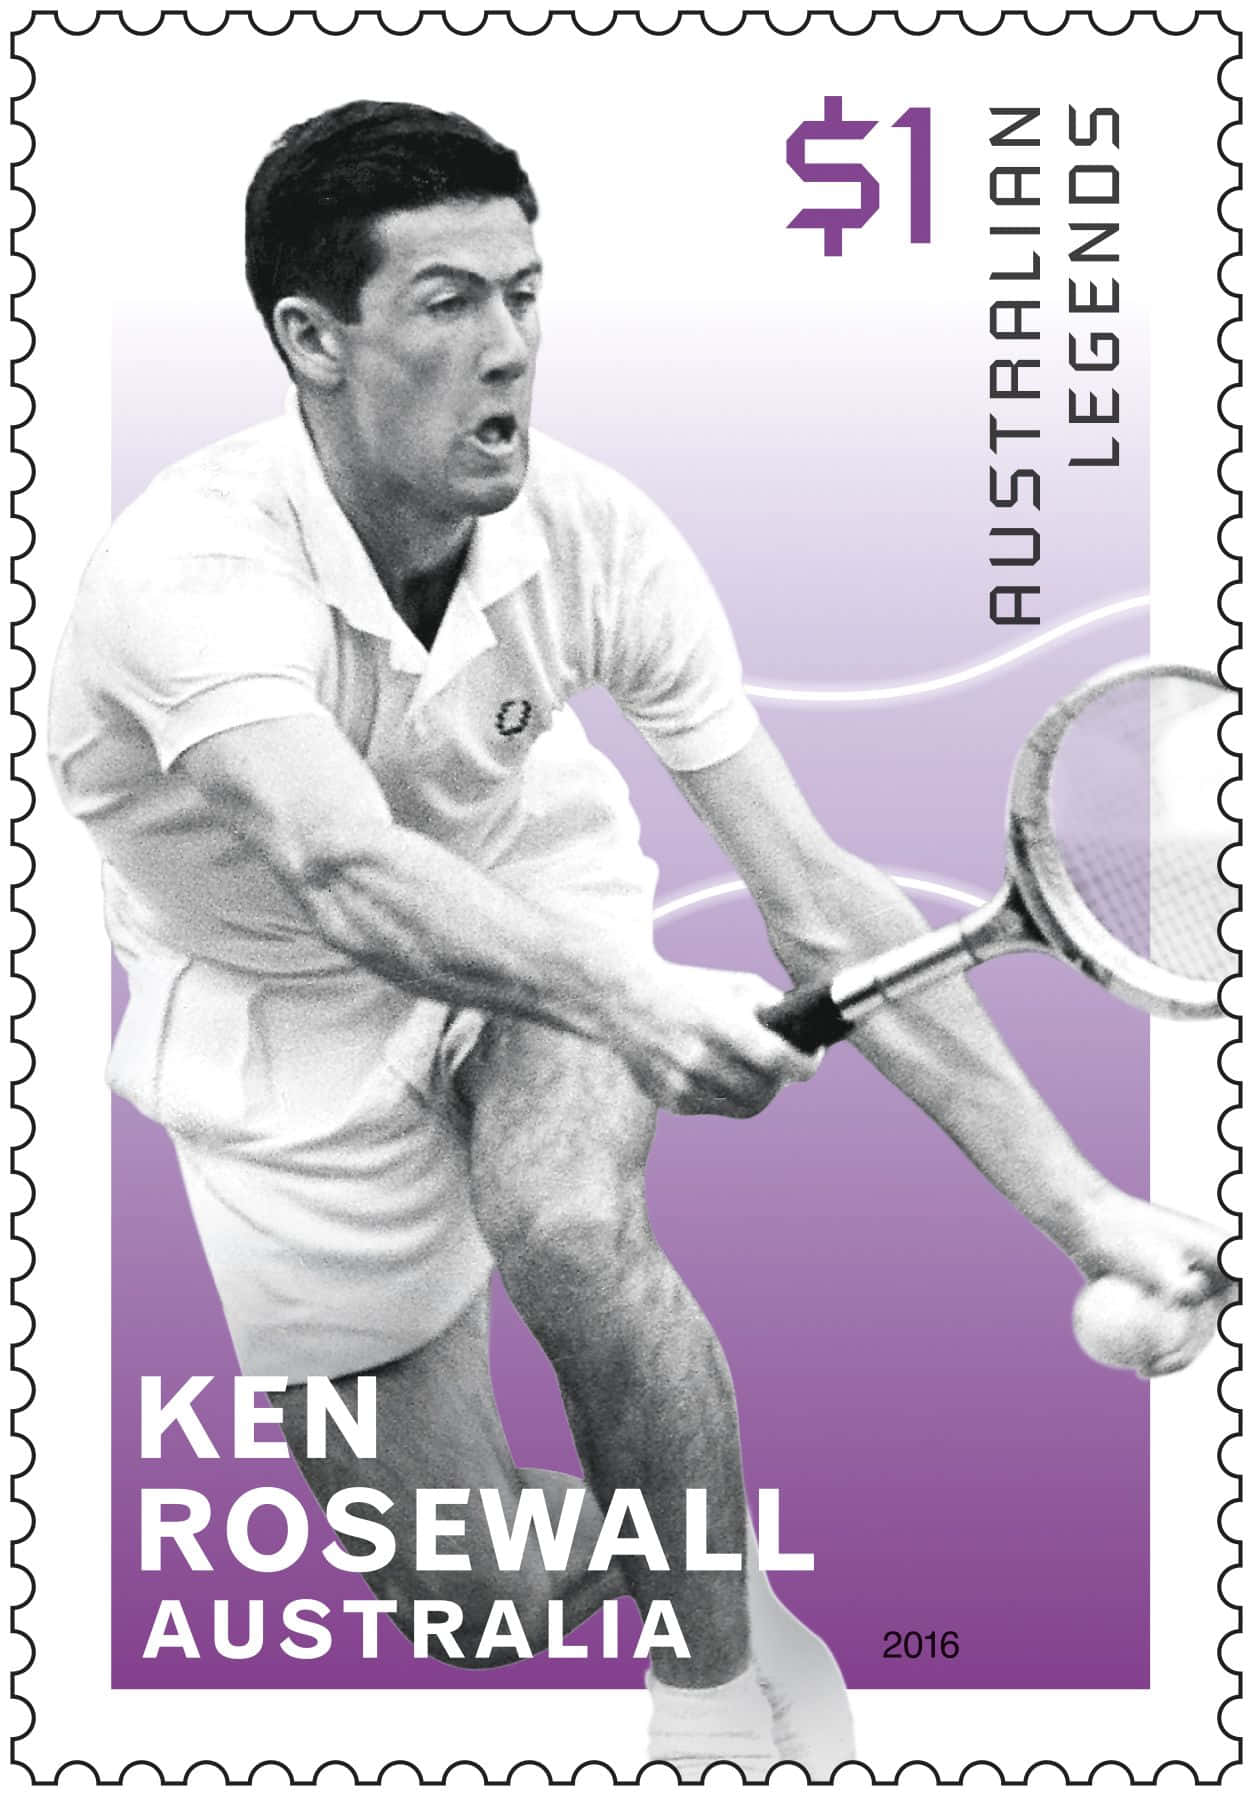 Ken Rosewall Postal Sticker Tennis Player Wallpaper